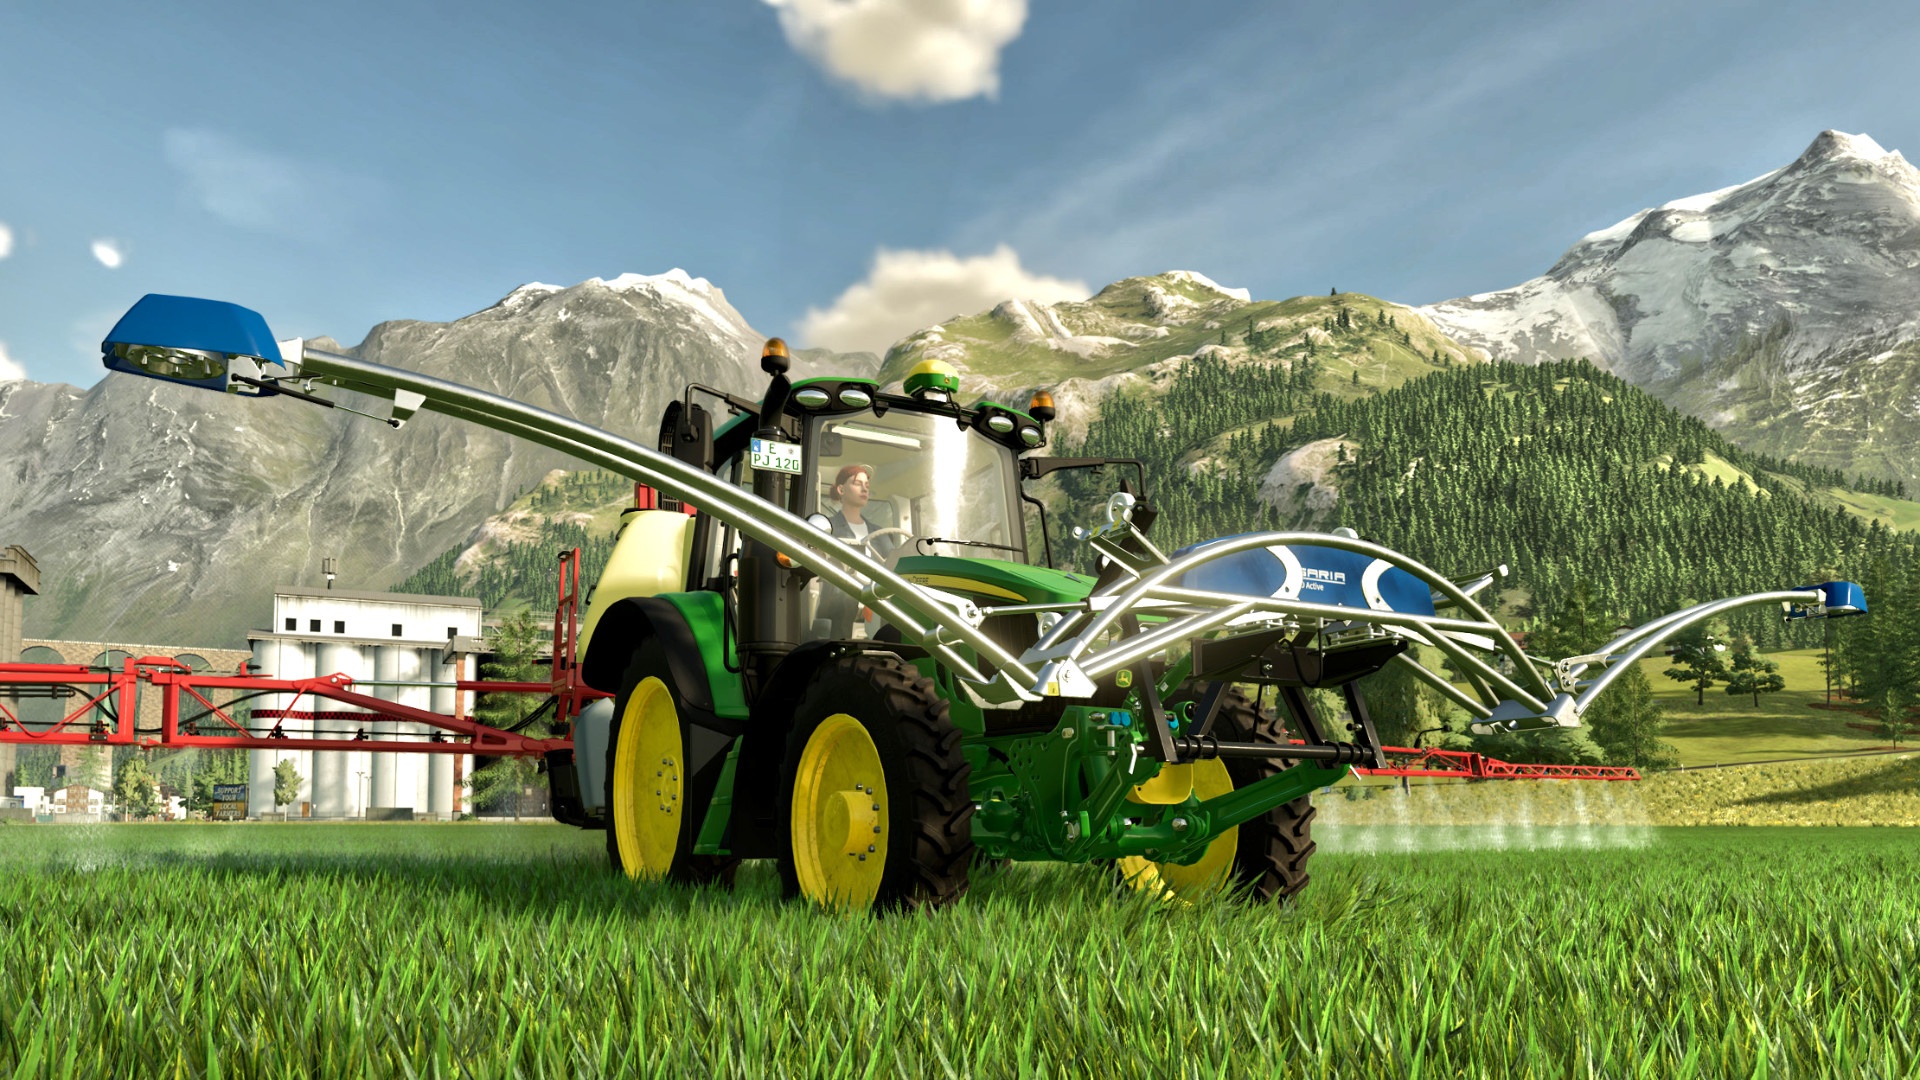 #Year 2 Season Pass für den Landwirtschafts-Simulator 22: So geht’s 2023 weiter